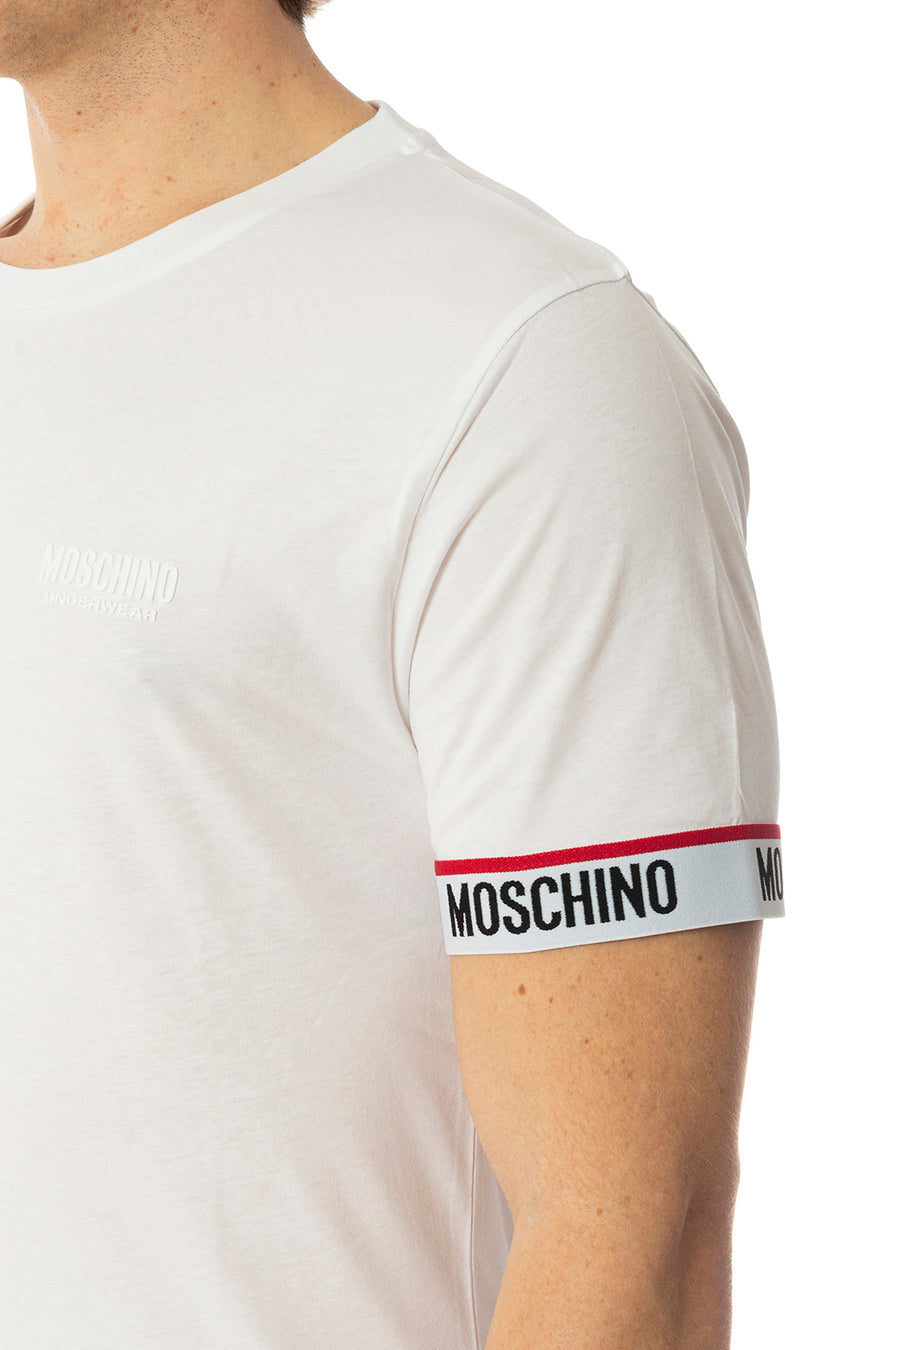 T-shirt MOSCHINO V1A0782 4305